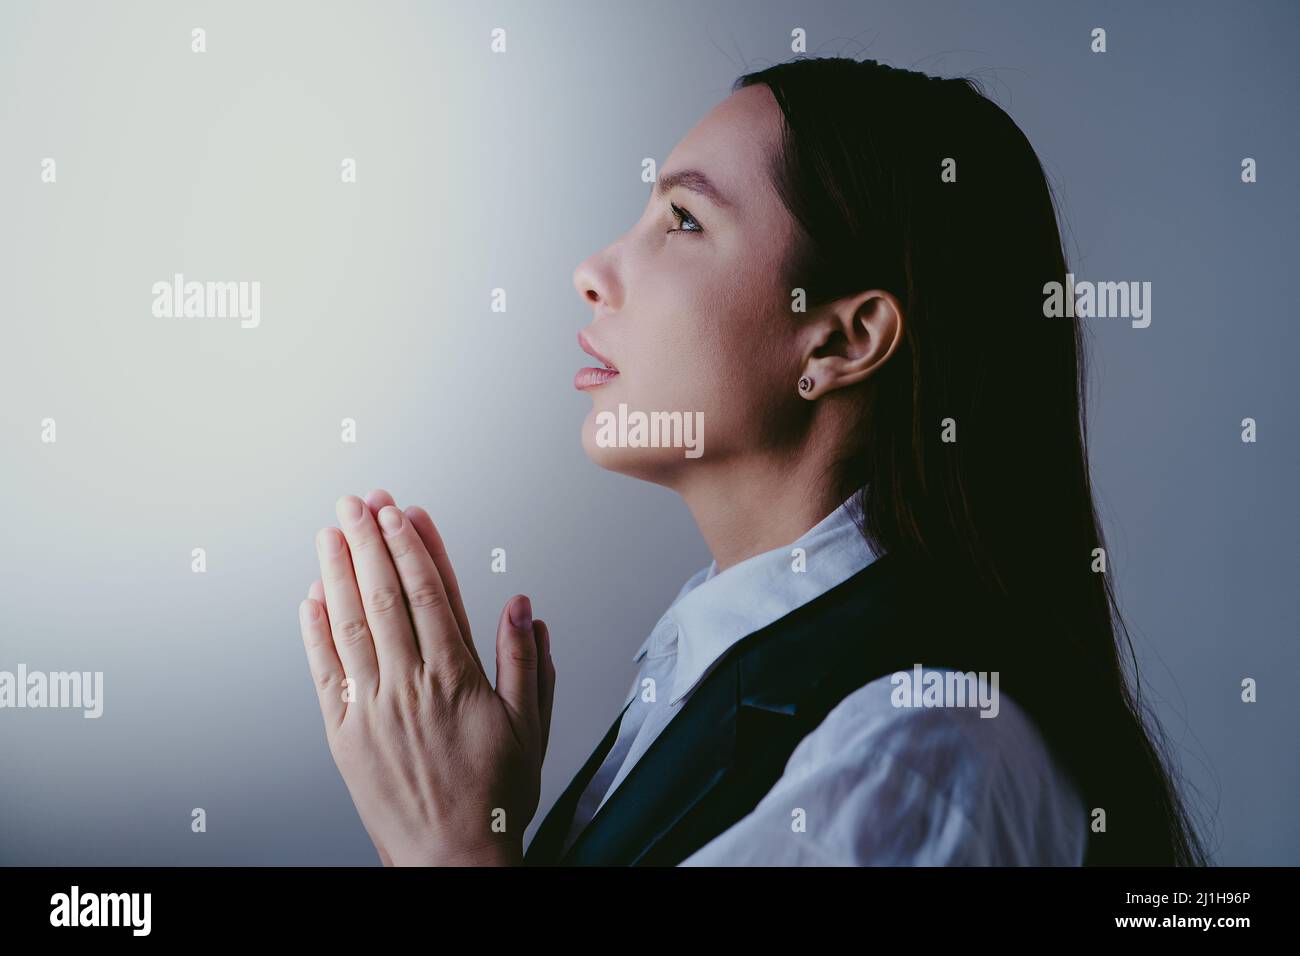 Jeune fille brunette priez à dieu, gros plan portrait. La femme plie ses mains dans la prière. Concept de foi et d'espoir. Banque D'Images